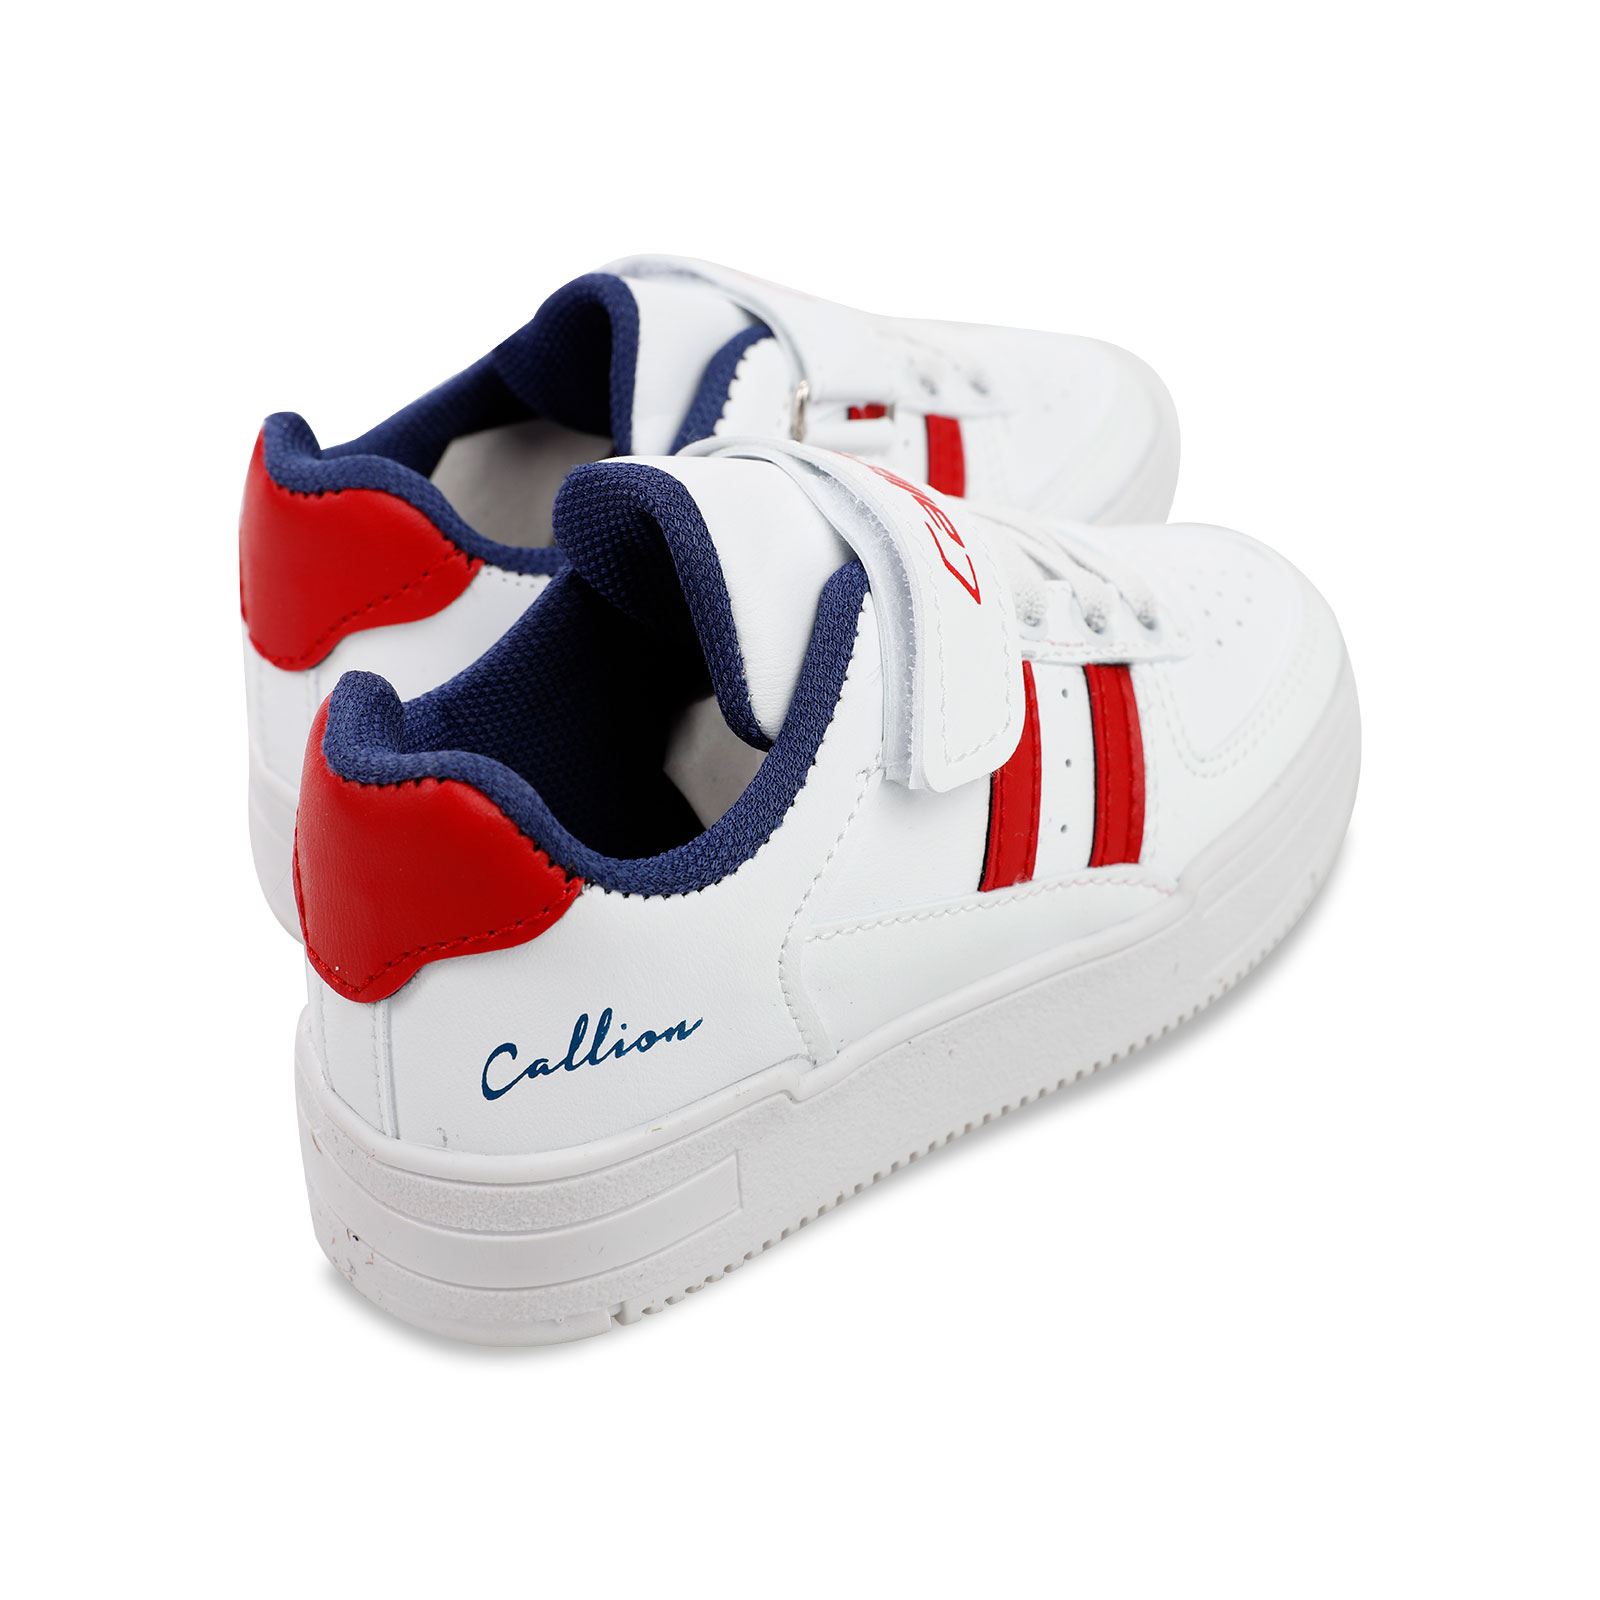 Callion Erkek Çocuk Spor Ayakkabı 26-30 Numara Beyaz